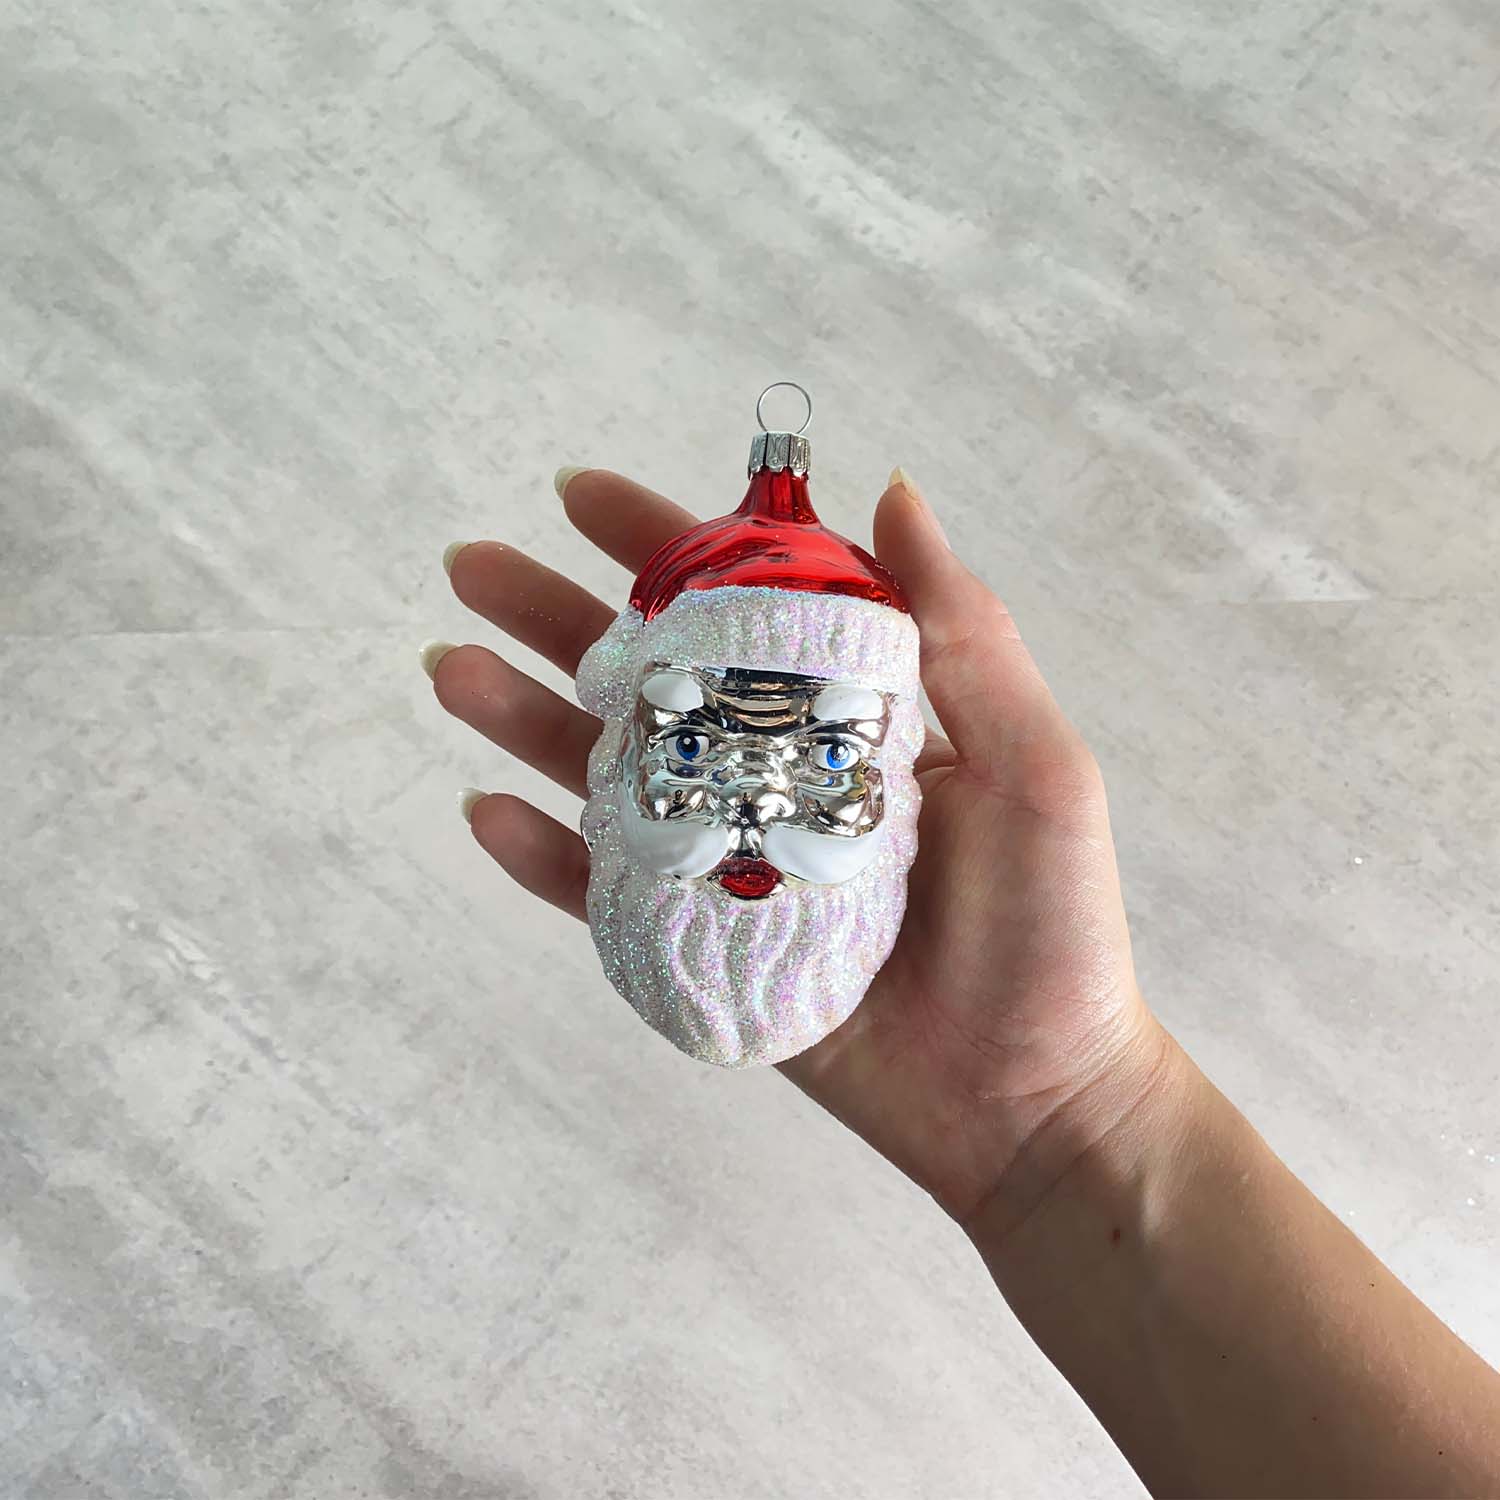 Großer Weihnachtsmannkopf silber mit Glitter Christbaumkugel aus Glas